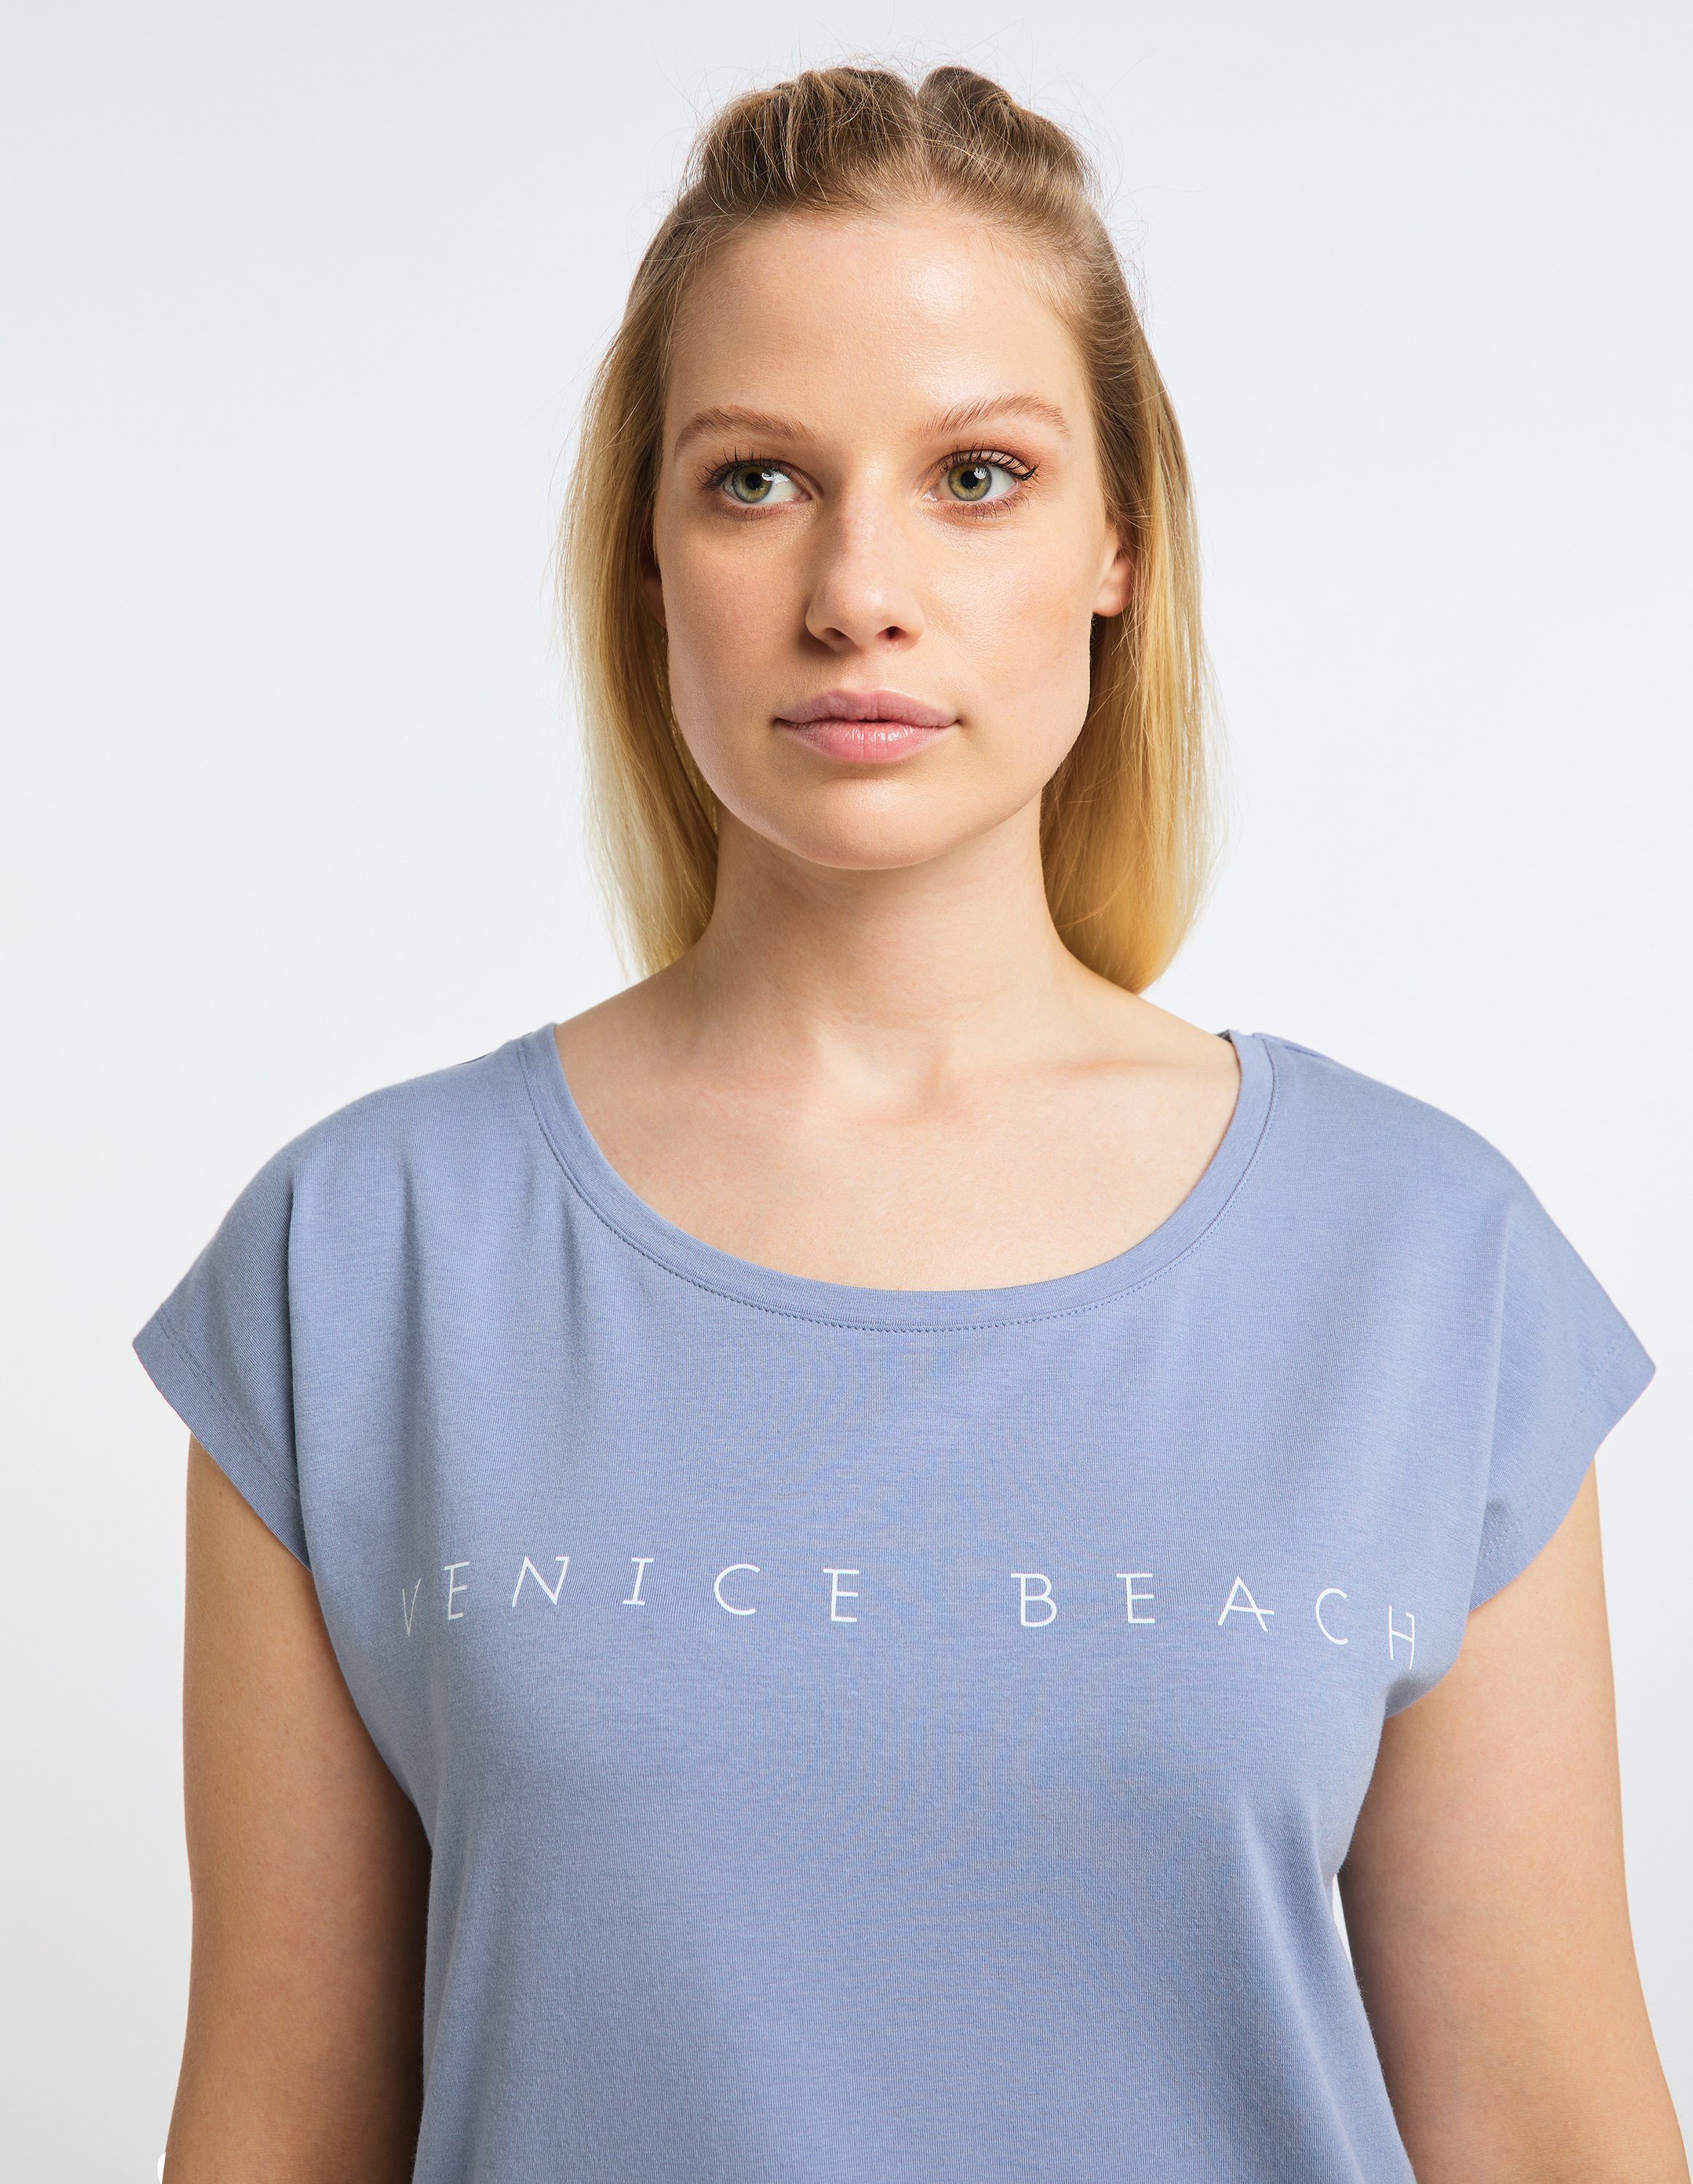 blue Wonder T-Shirt delft VB Beach Venice T-Shirt